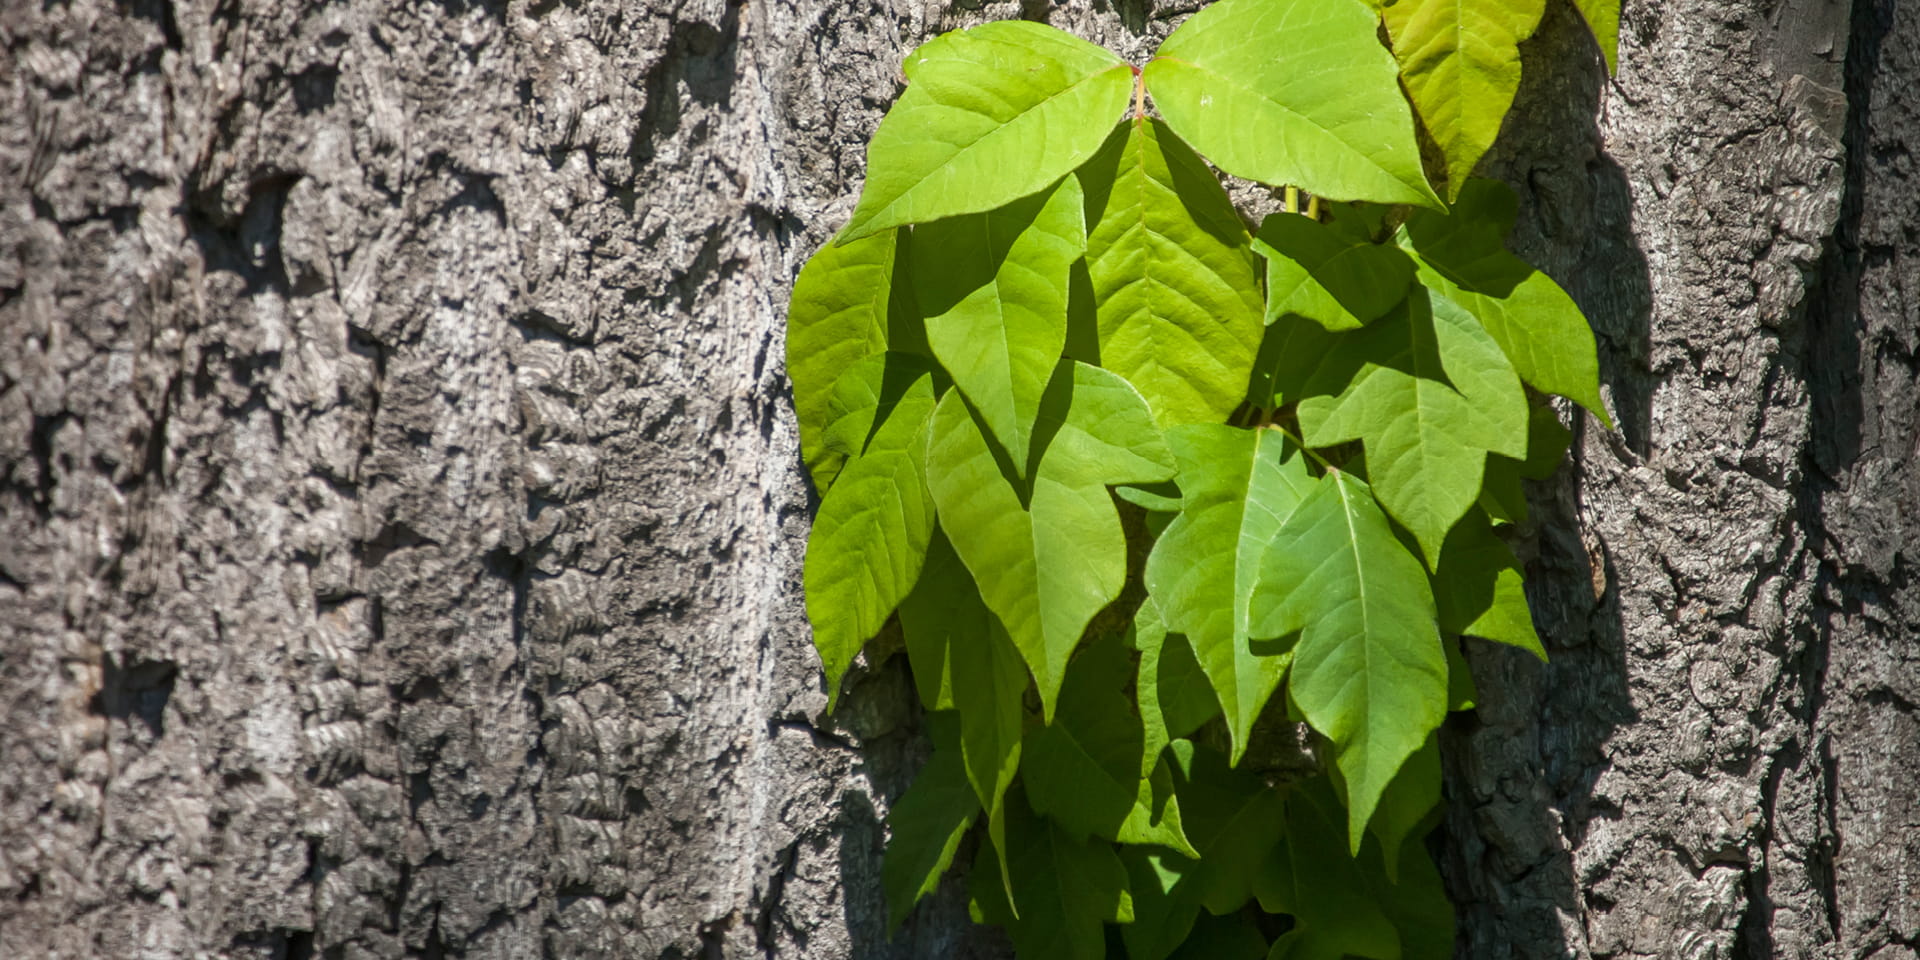 poison oak leaves on a tree trunk